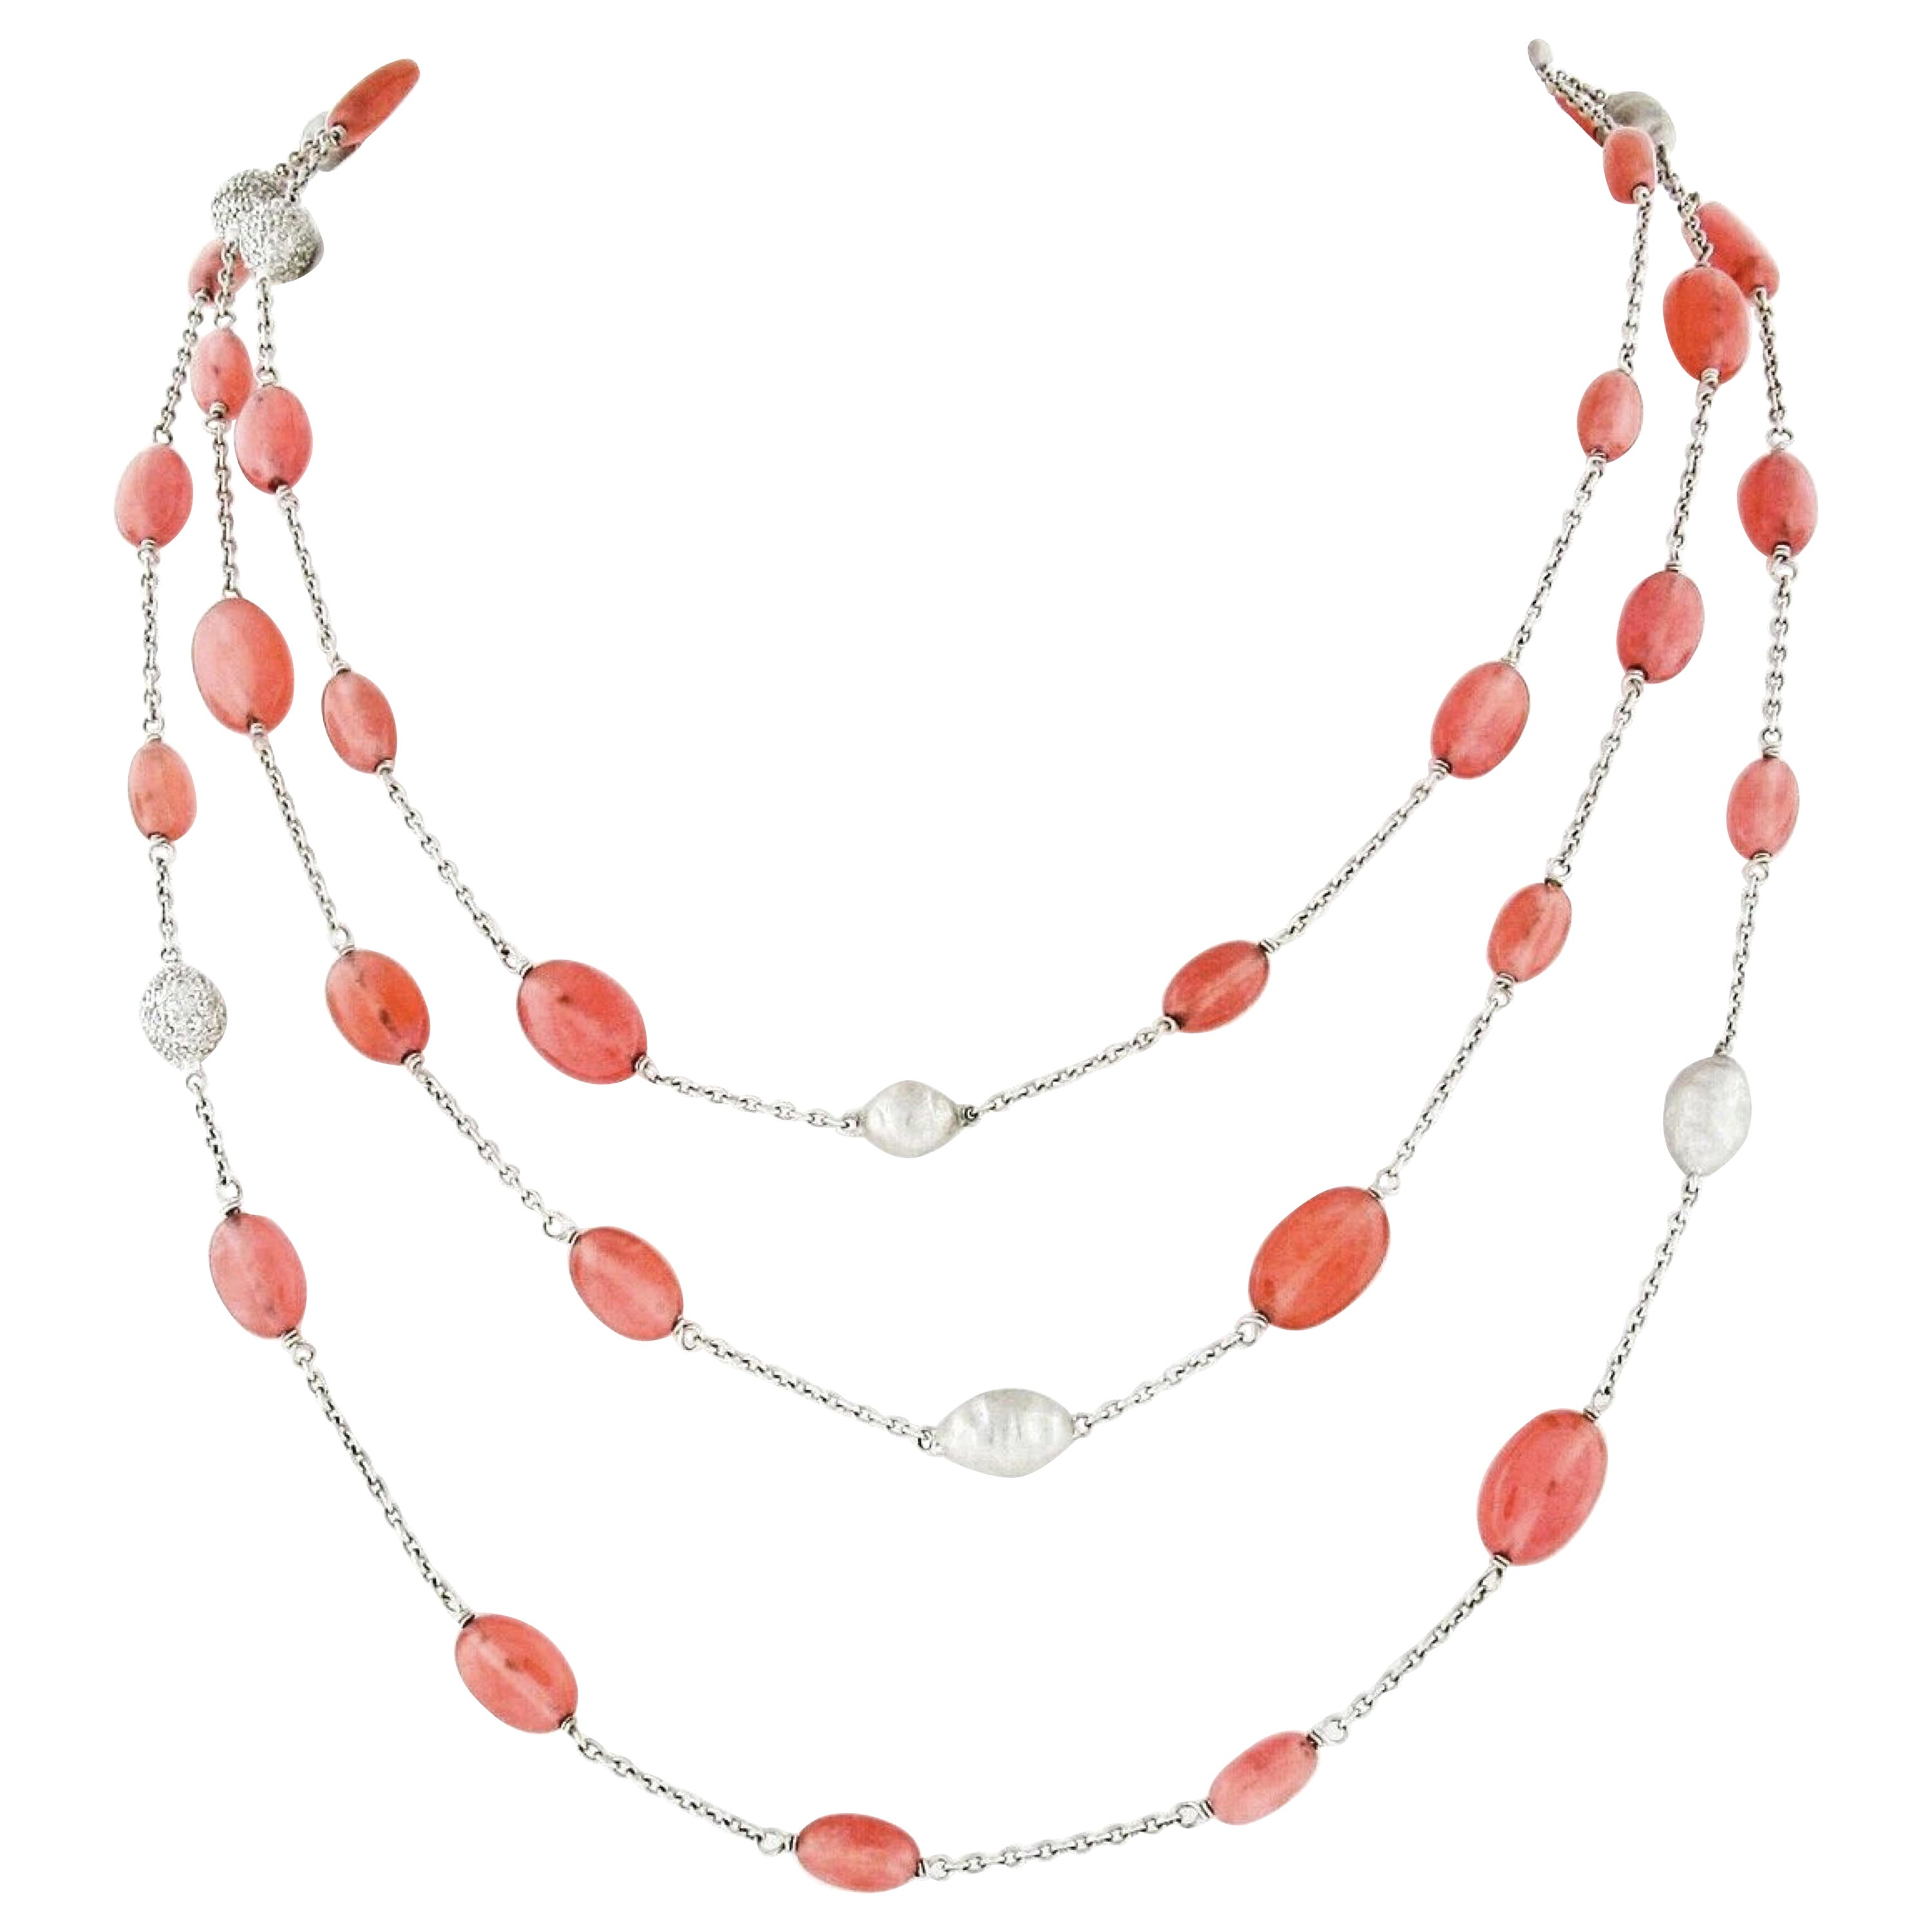 Long collier à chaîne en or blanc 18 carats avec quartz rose tacheté et diamants